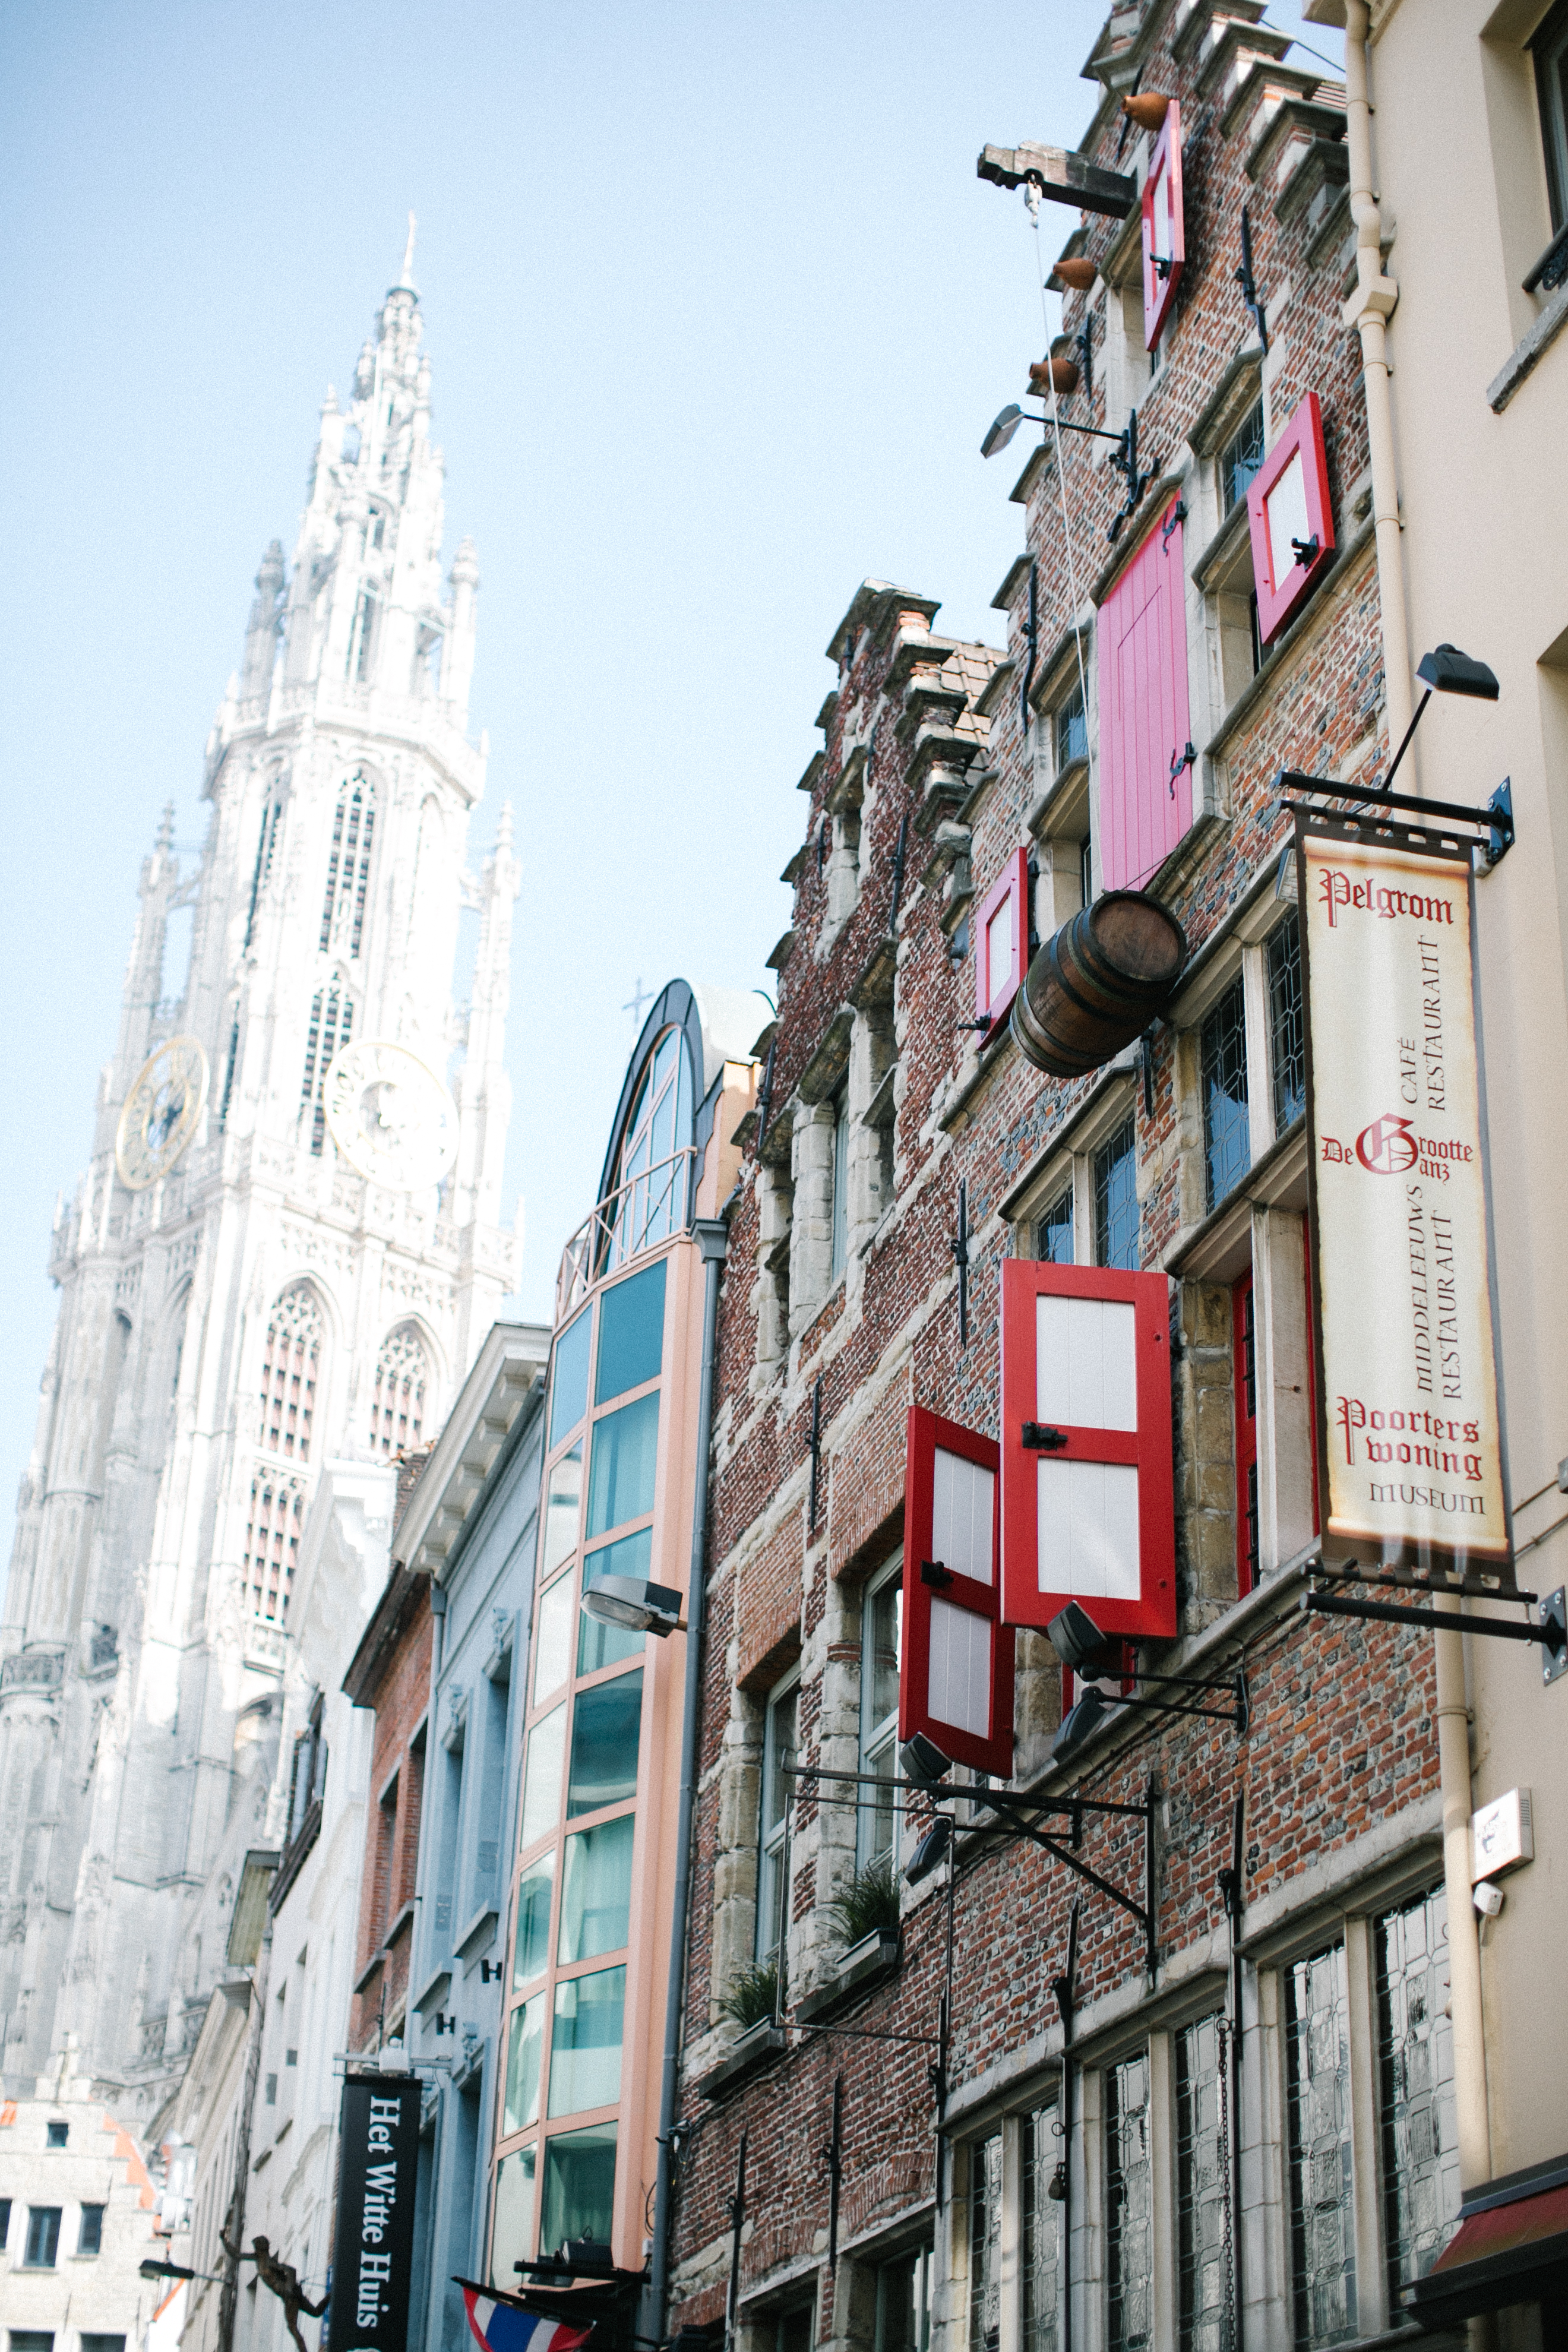 Walking the Sidewalks of Antwerp Belgium